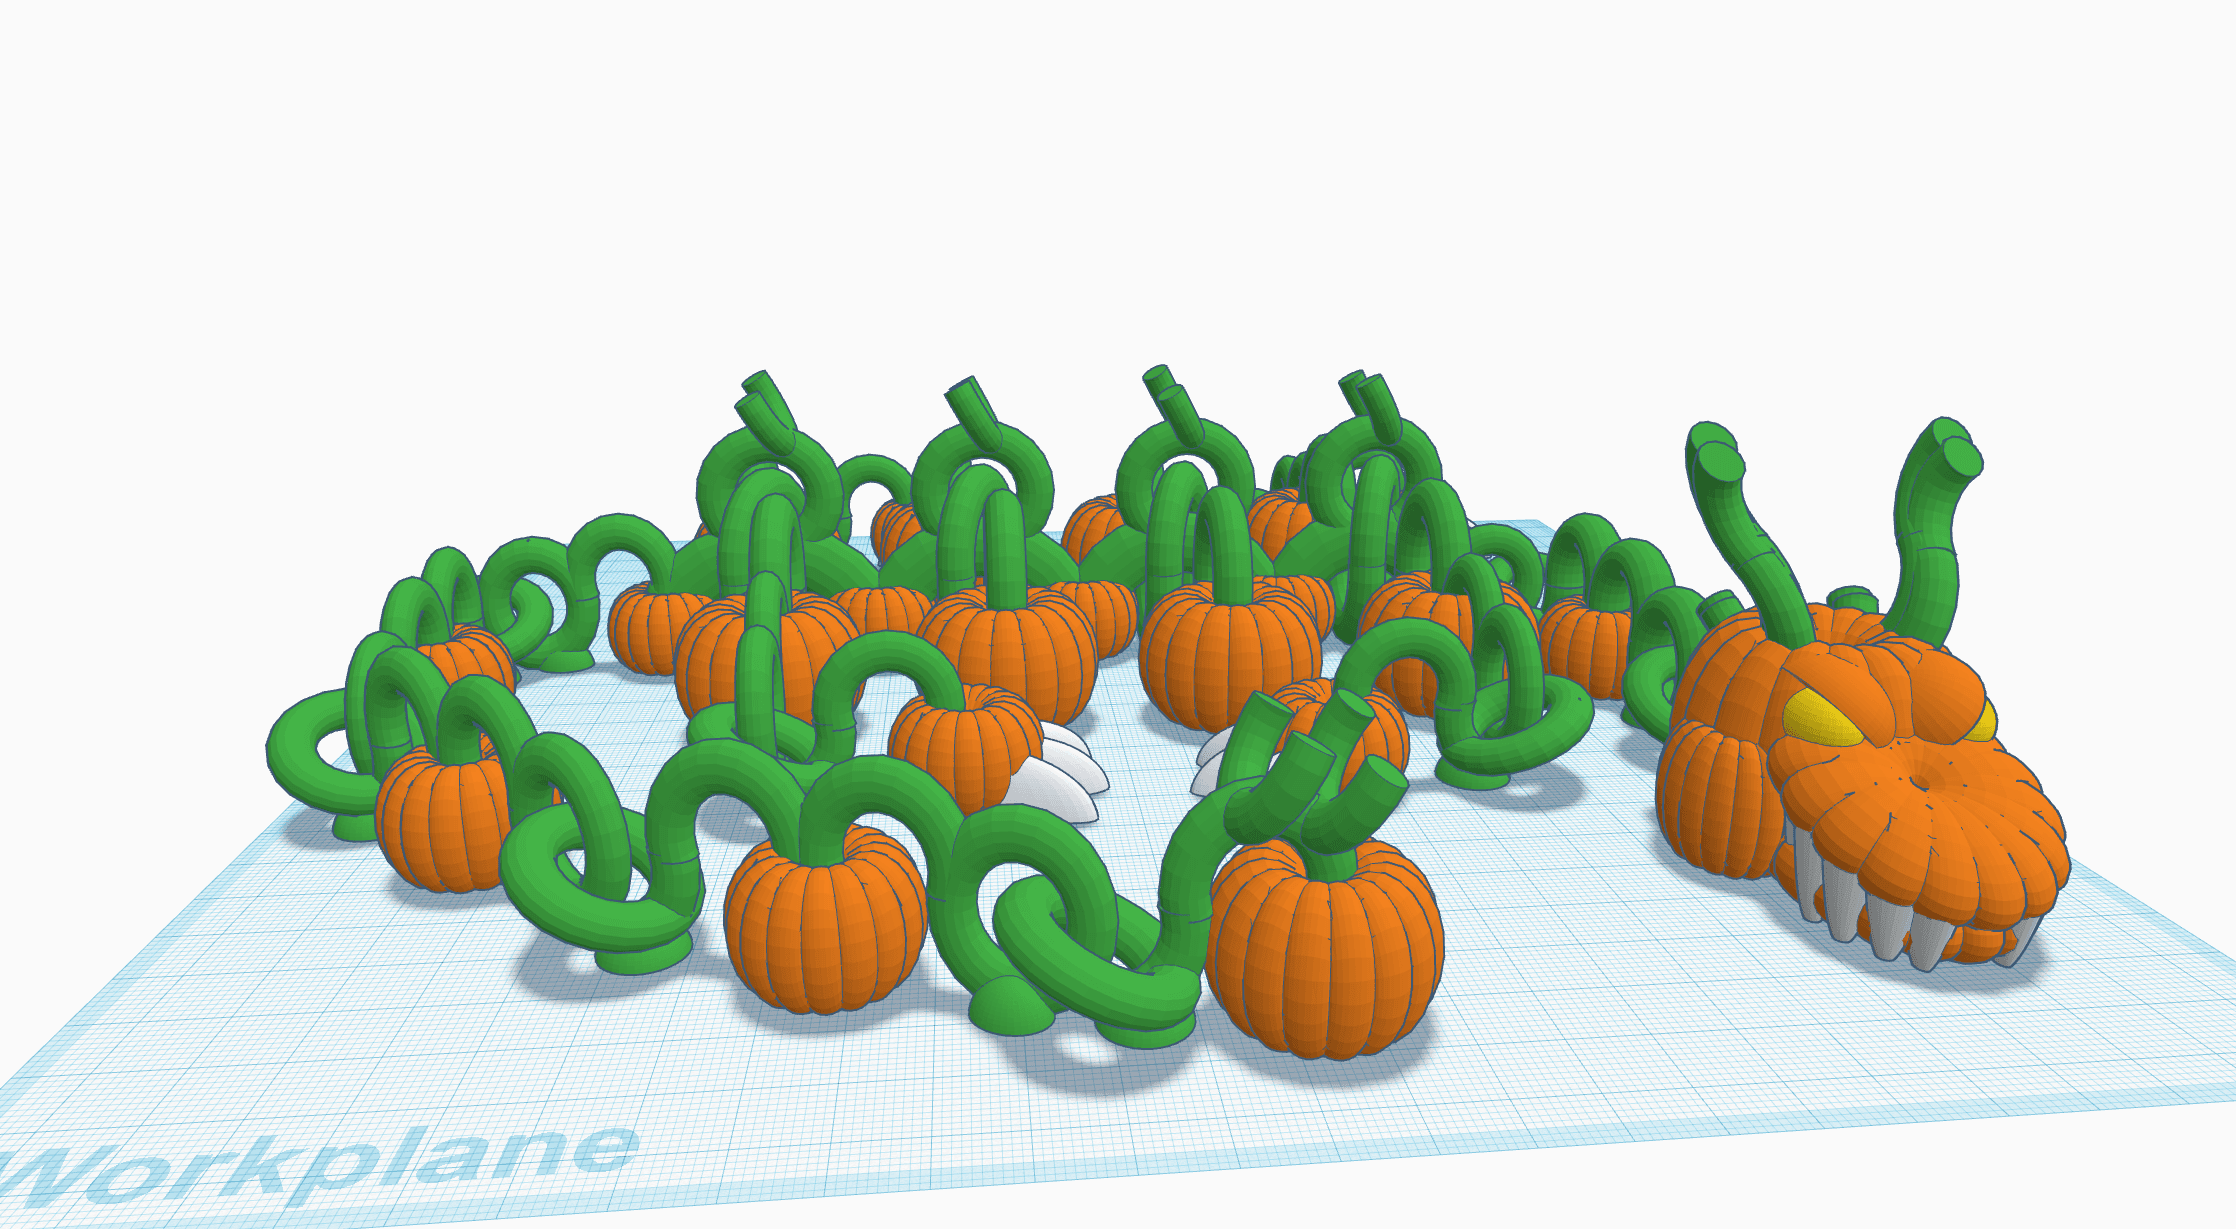 Shakaworld3d Pumpkin Patch Dragon Challenge Release V1.stl 3d model